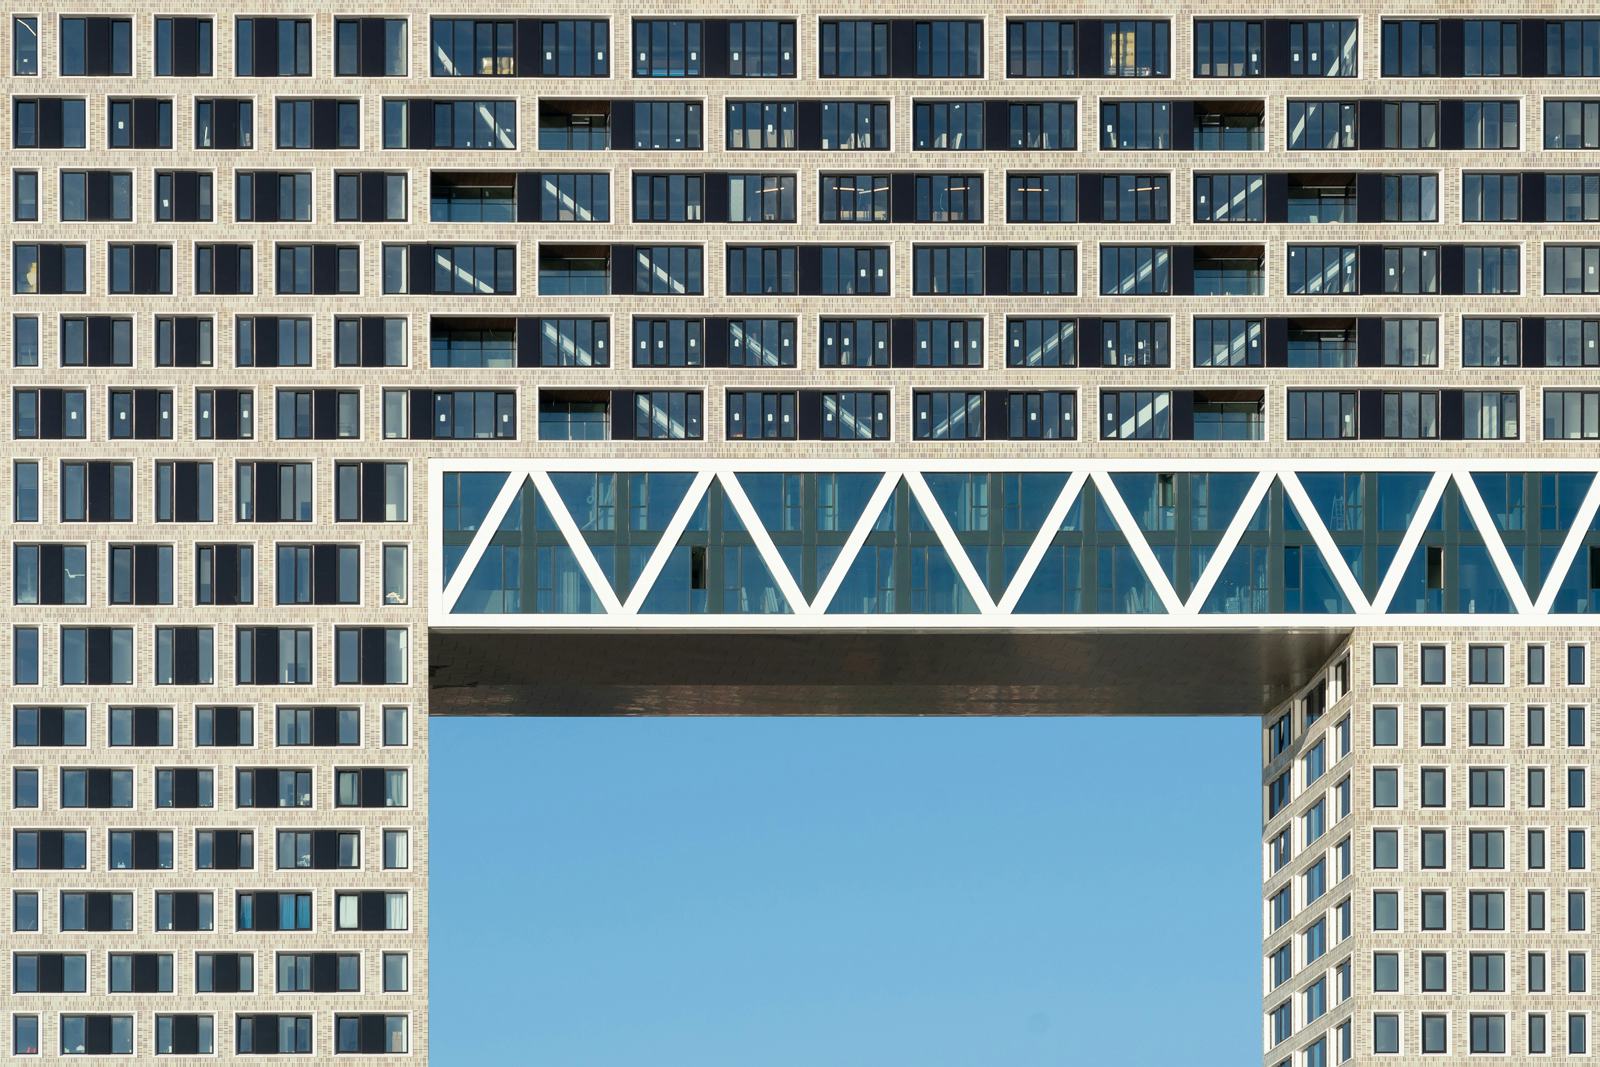 Pontsteiger in Amsterdam door arons en gelauff architecten, beeld Ossip van Duivenbode